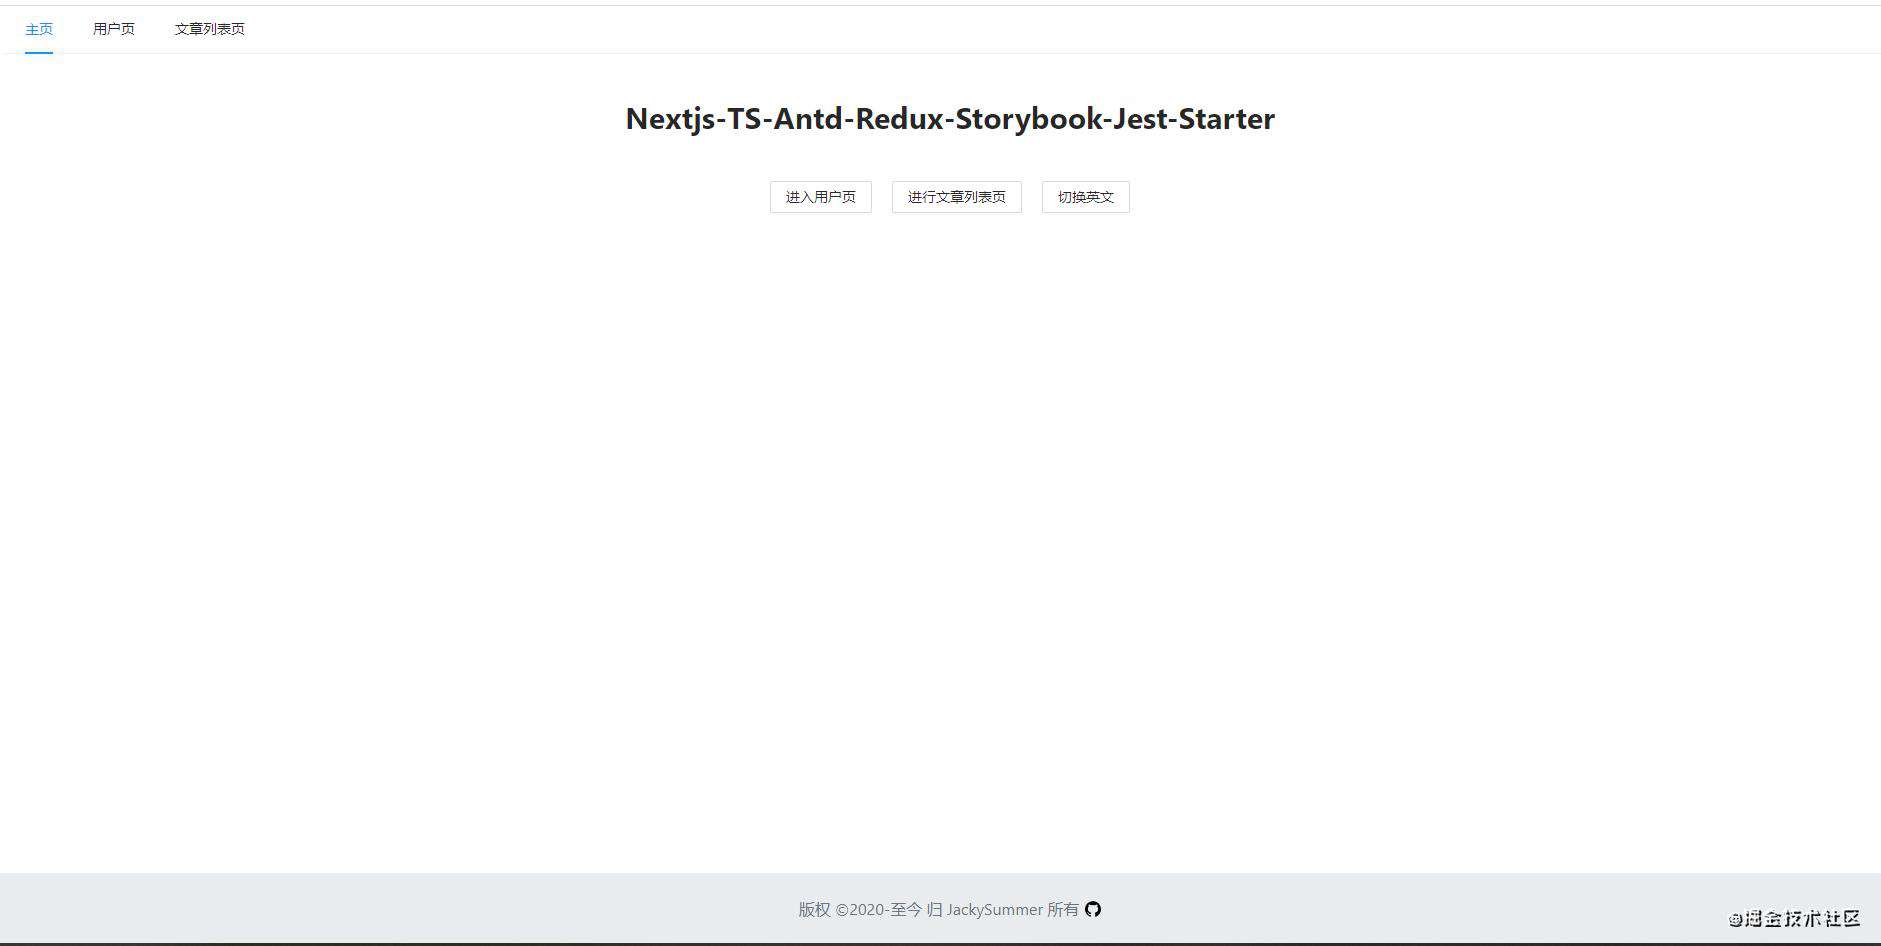 搭建 Next.js + TS + Antd + Redux + Storybook 企业级项目脚手架